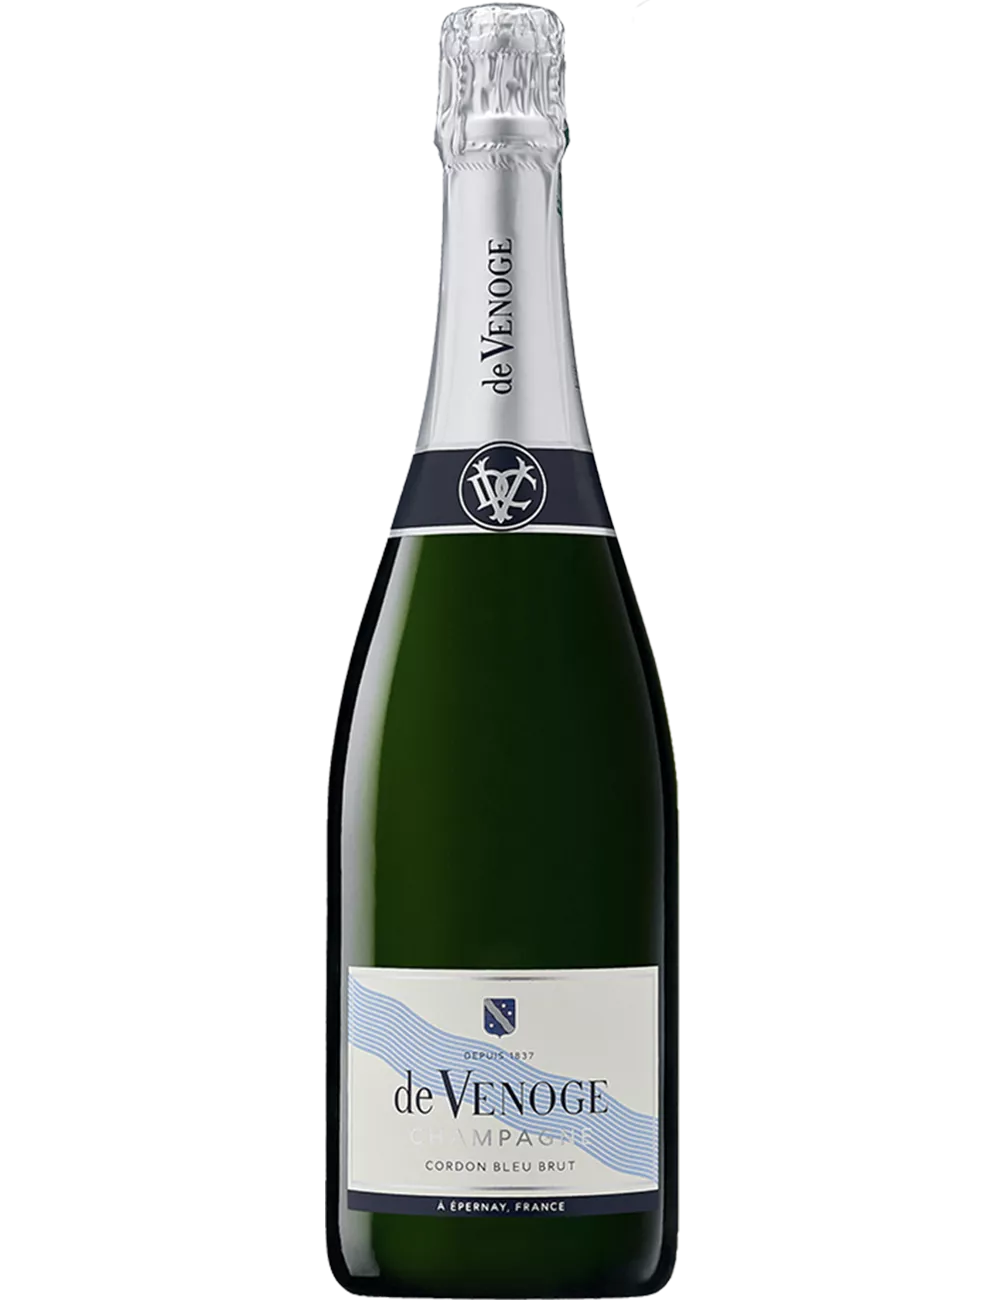 De Venoge - Cordon bleu - Champagne